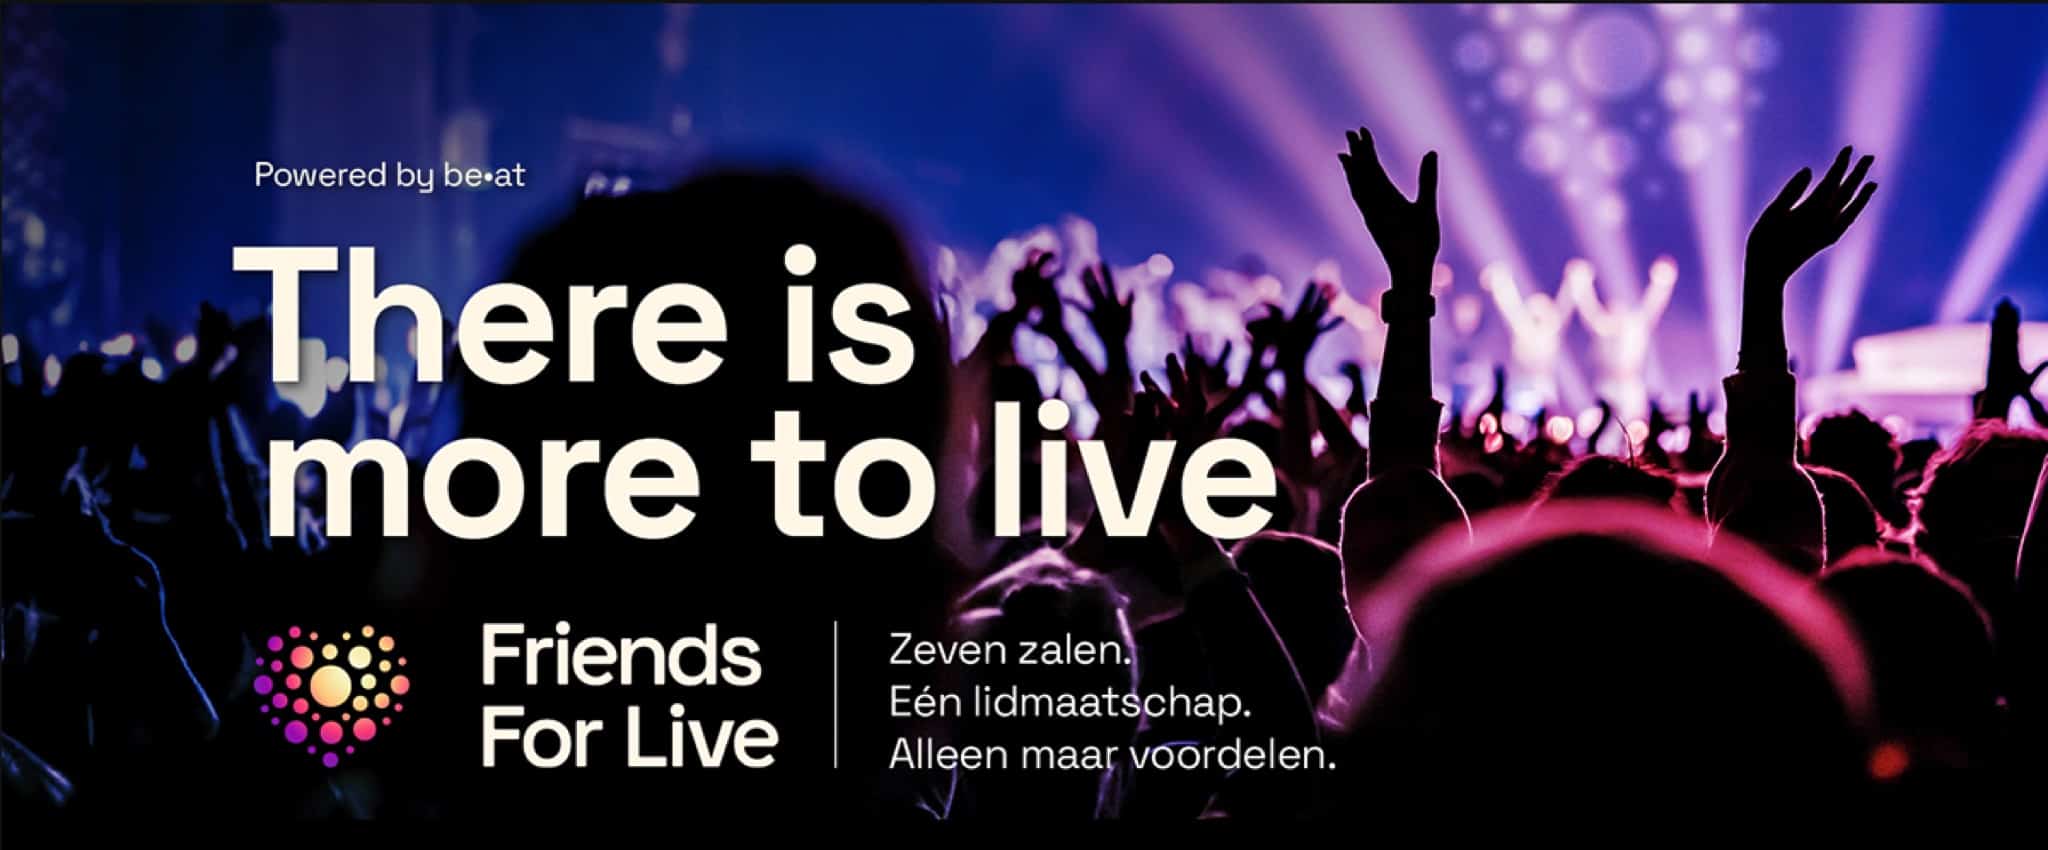 Friends For Live: de nieuwe community voor concert-en theaterliefhebbers uit de startblokken